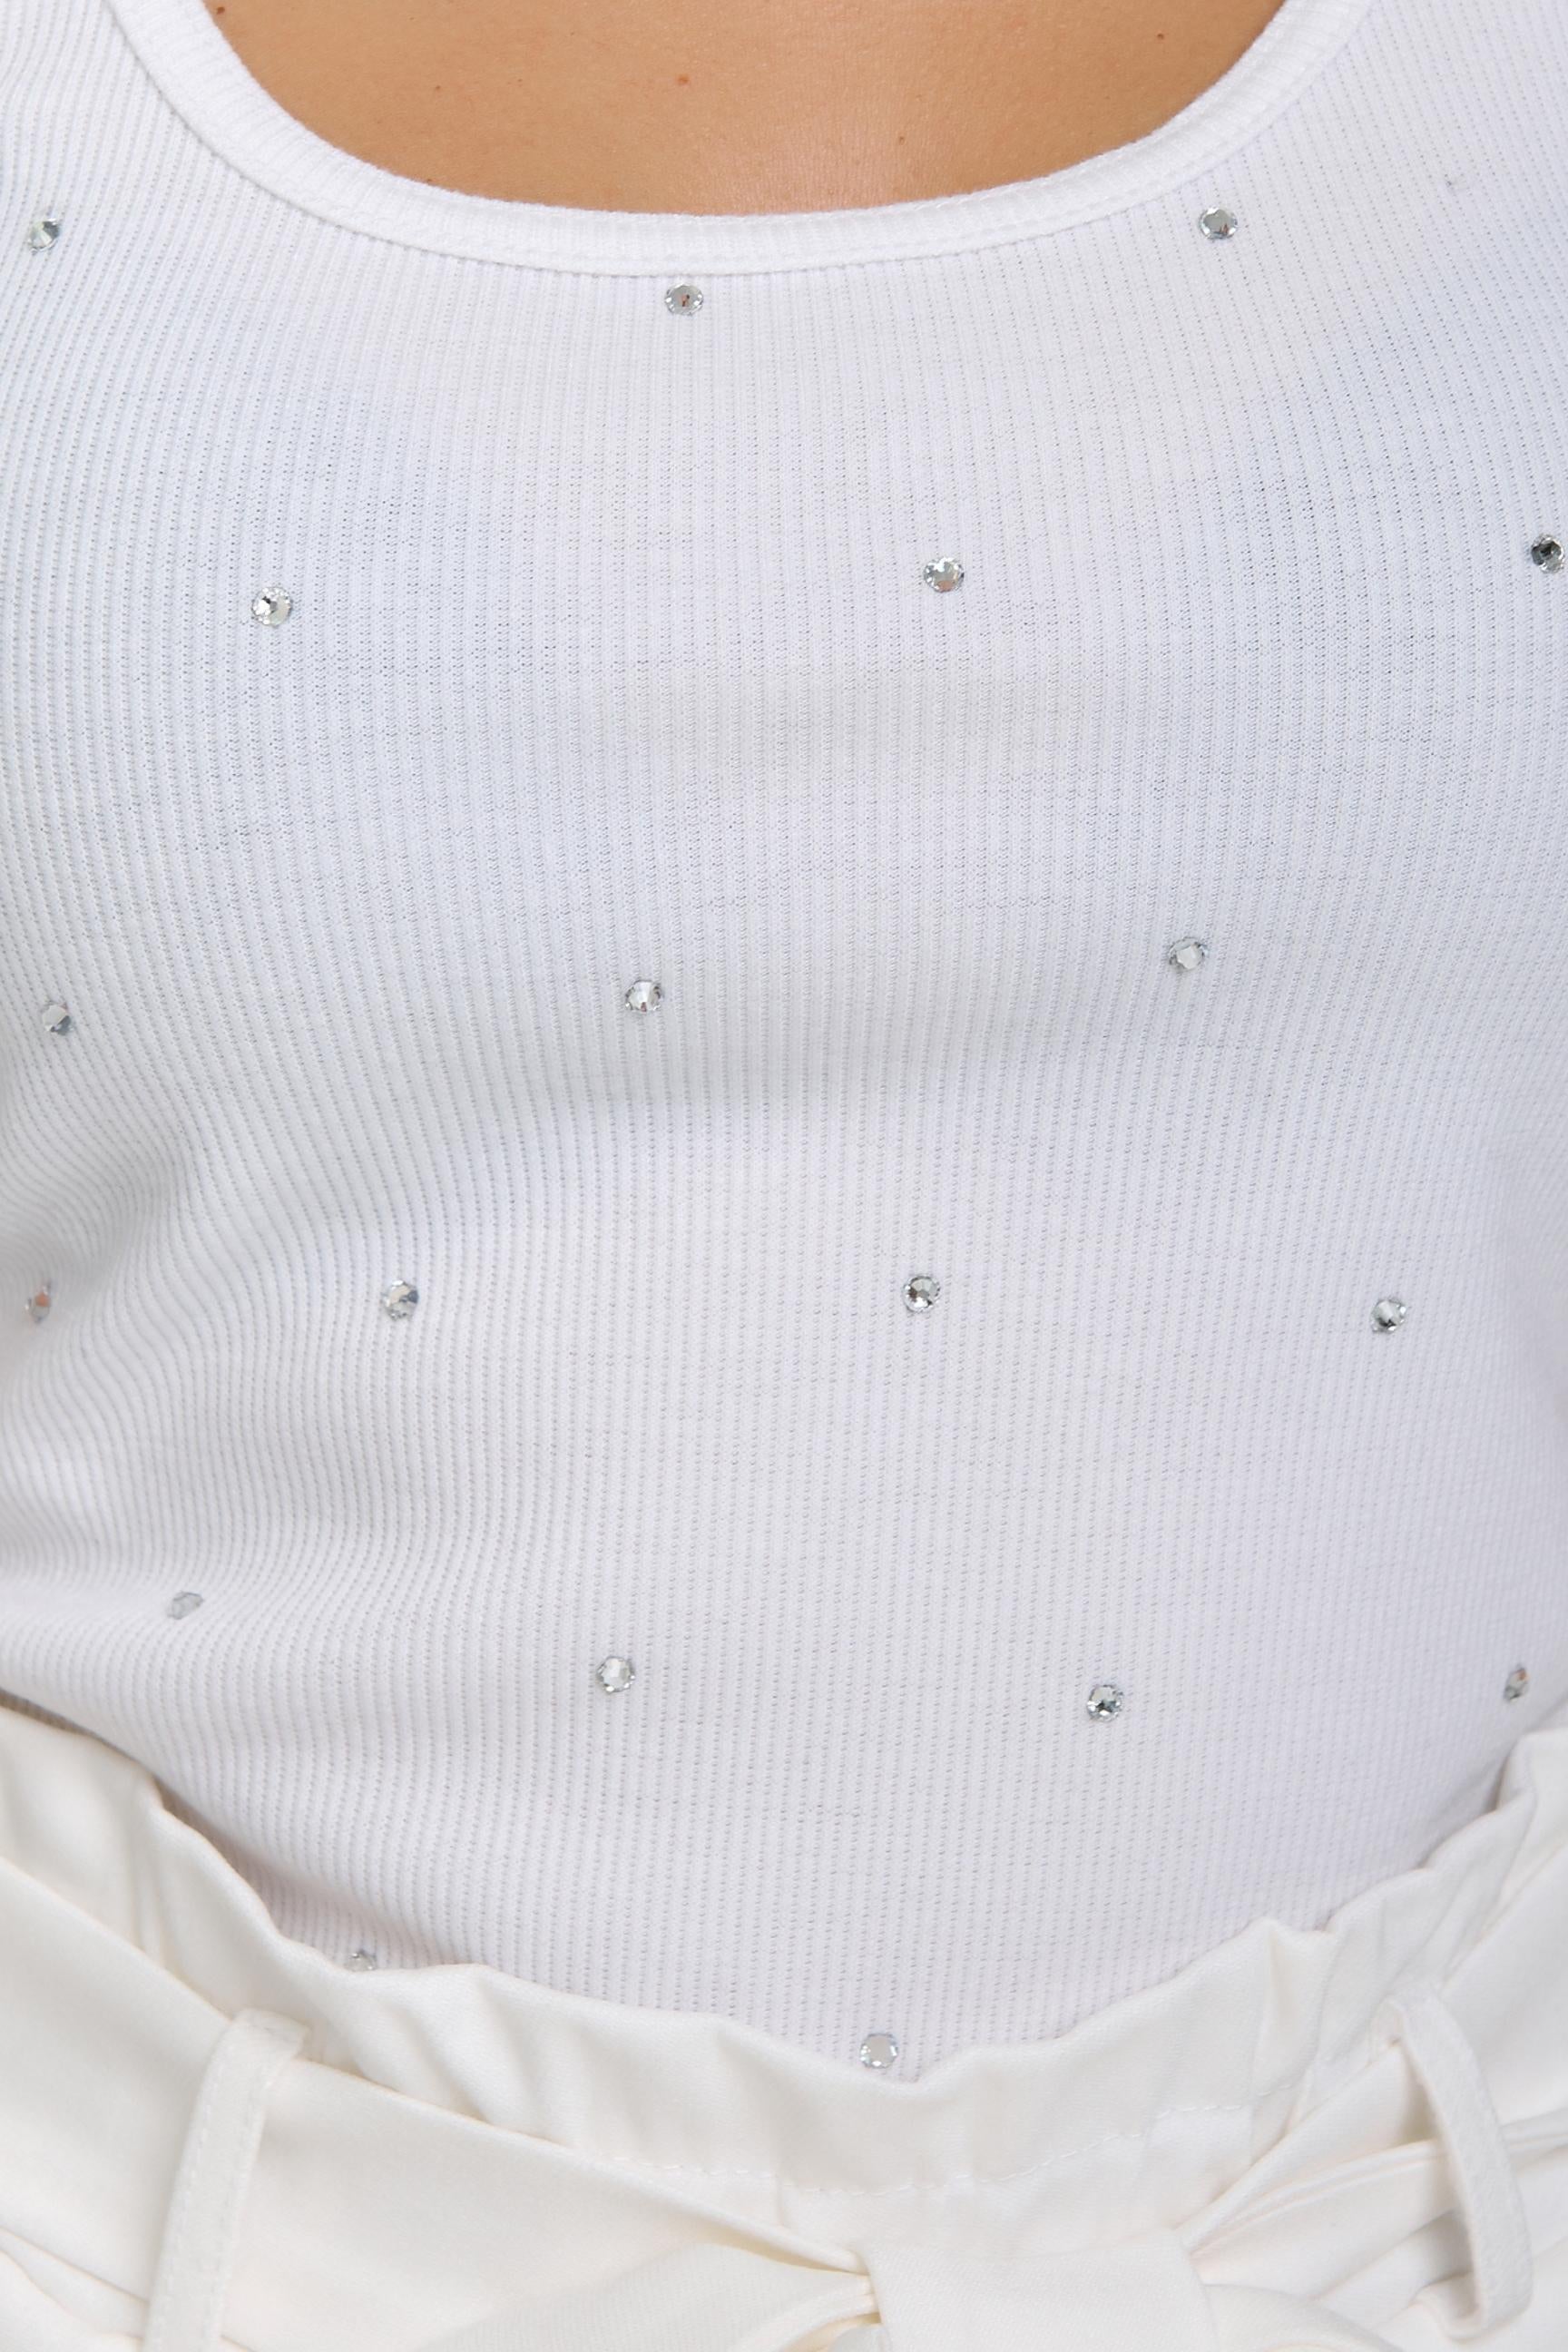 VOLGINA Couture White Handmade Tank Top with Swarovski Rhinestones + White Handmade Shorts Bundle